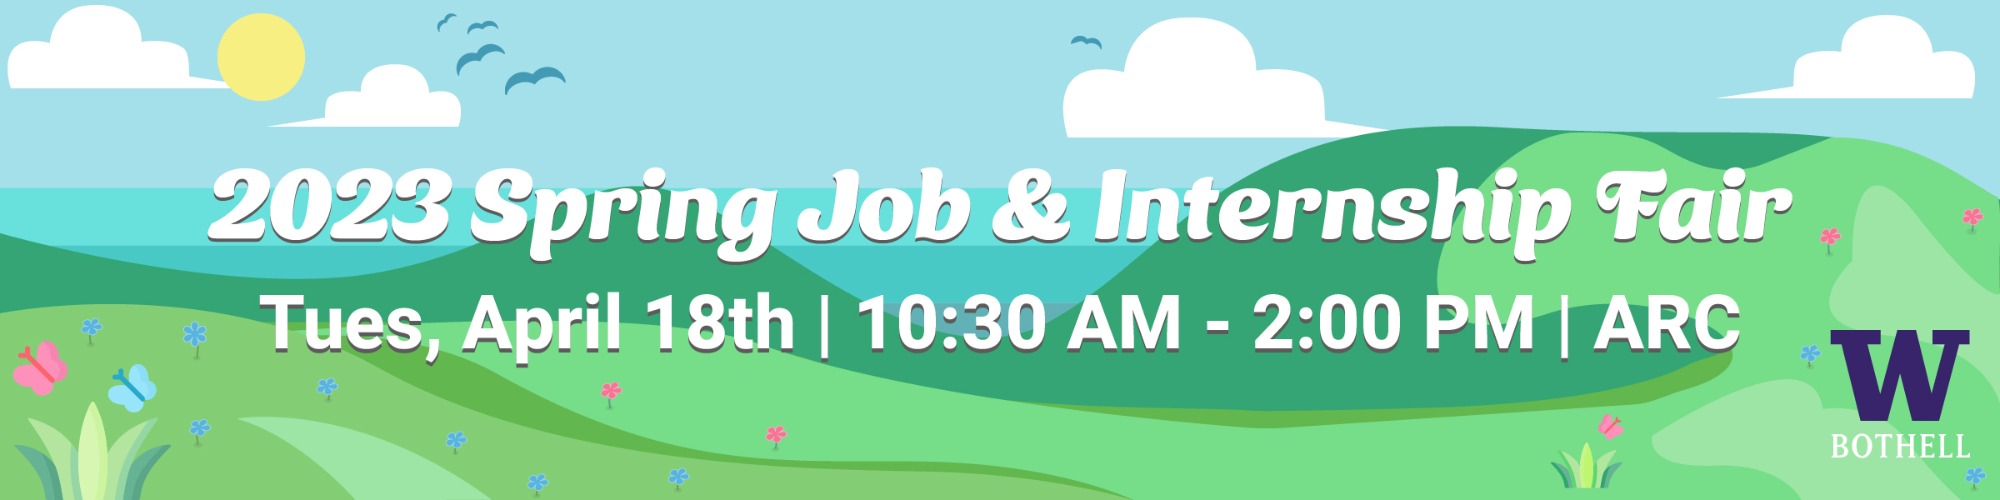 Spring Job & Internship Fair 2023